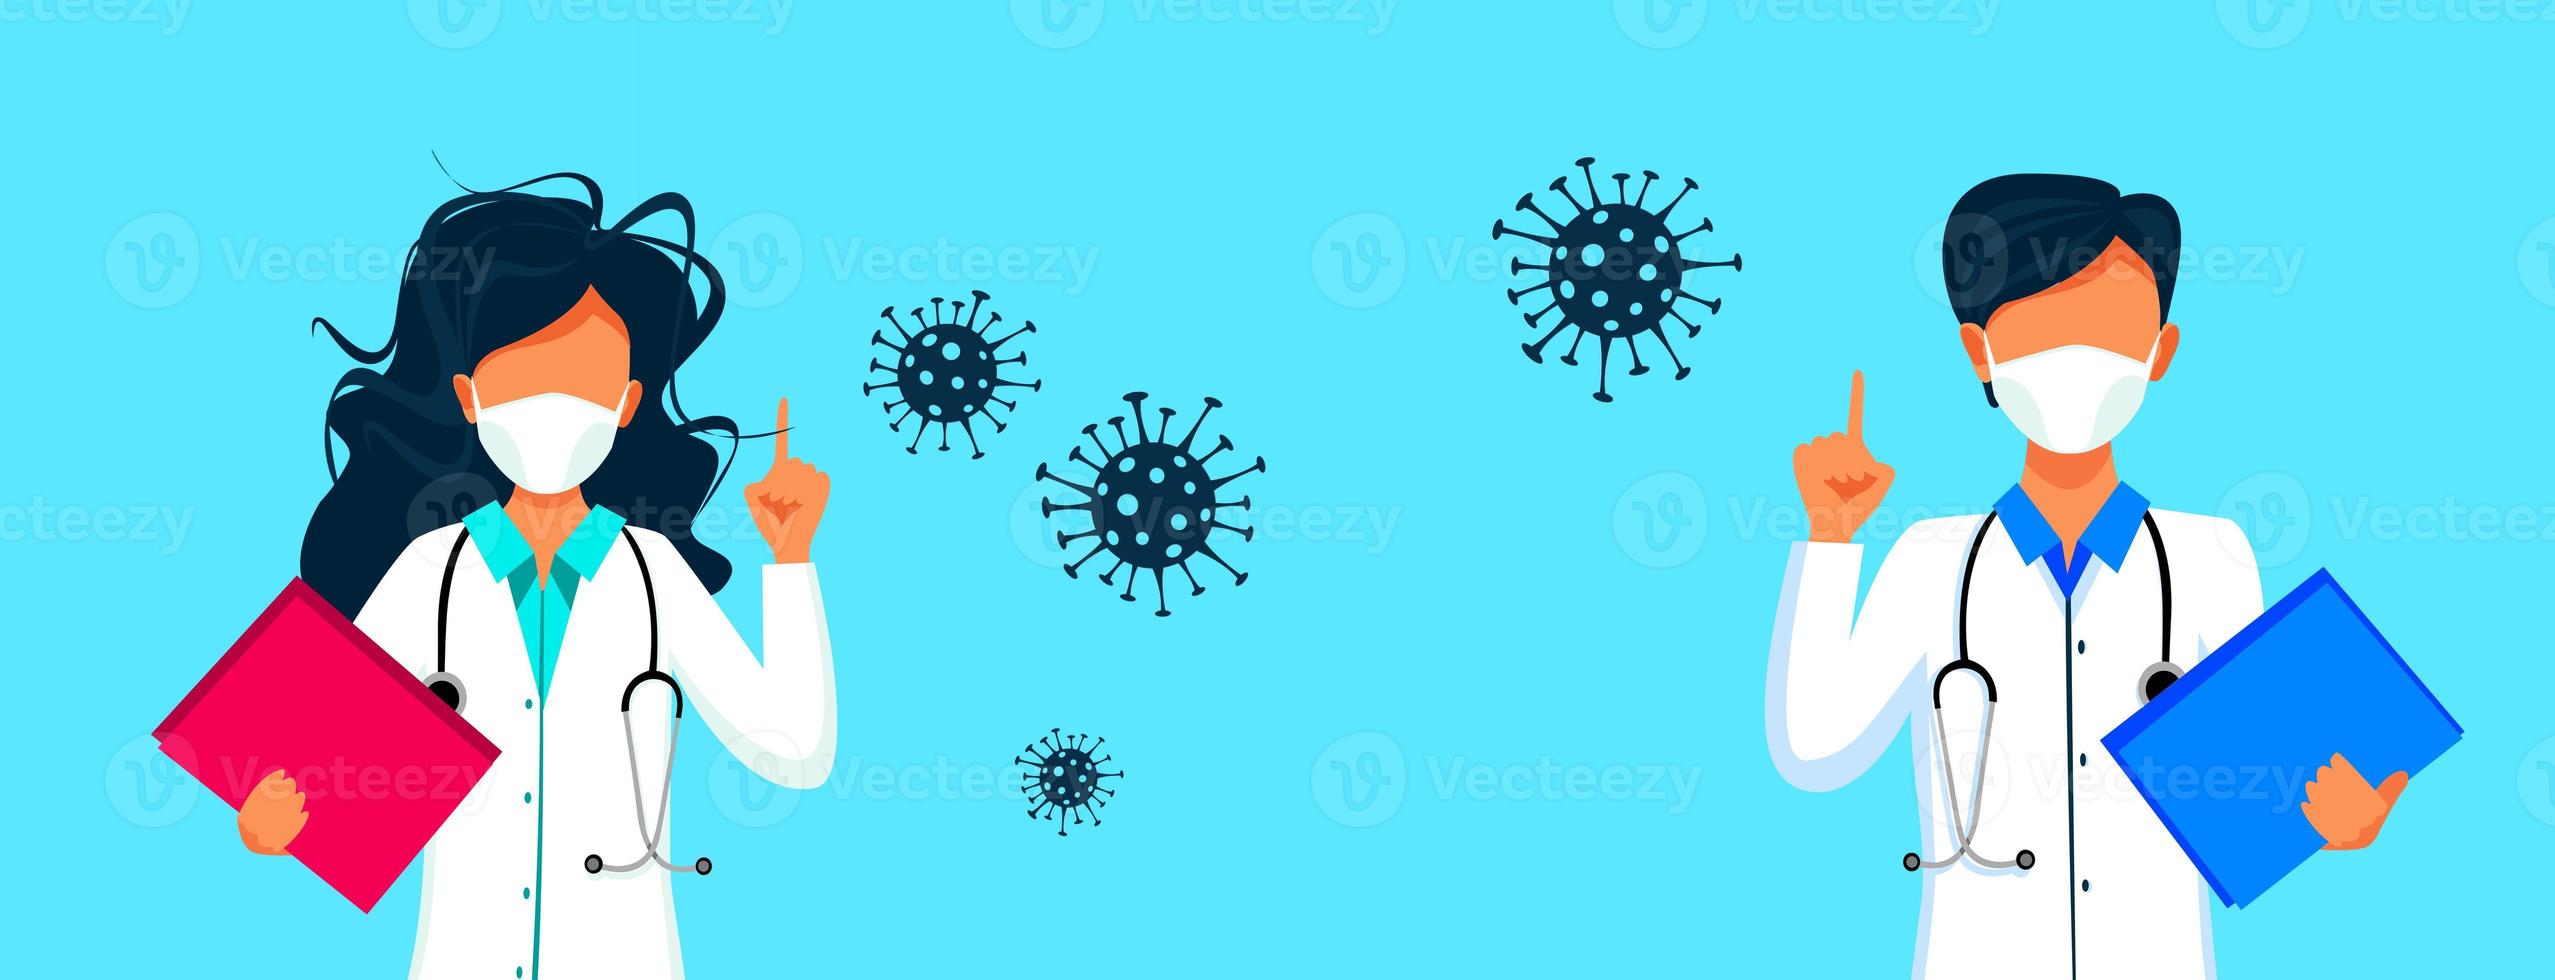 médico contra la nueva infección por coronavirus. ilustración 3d foto